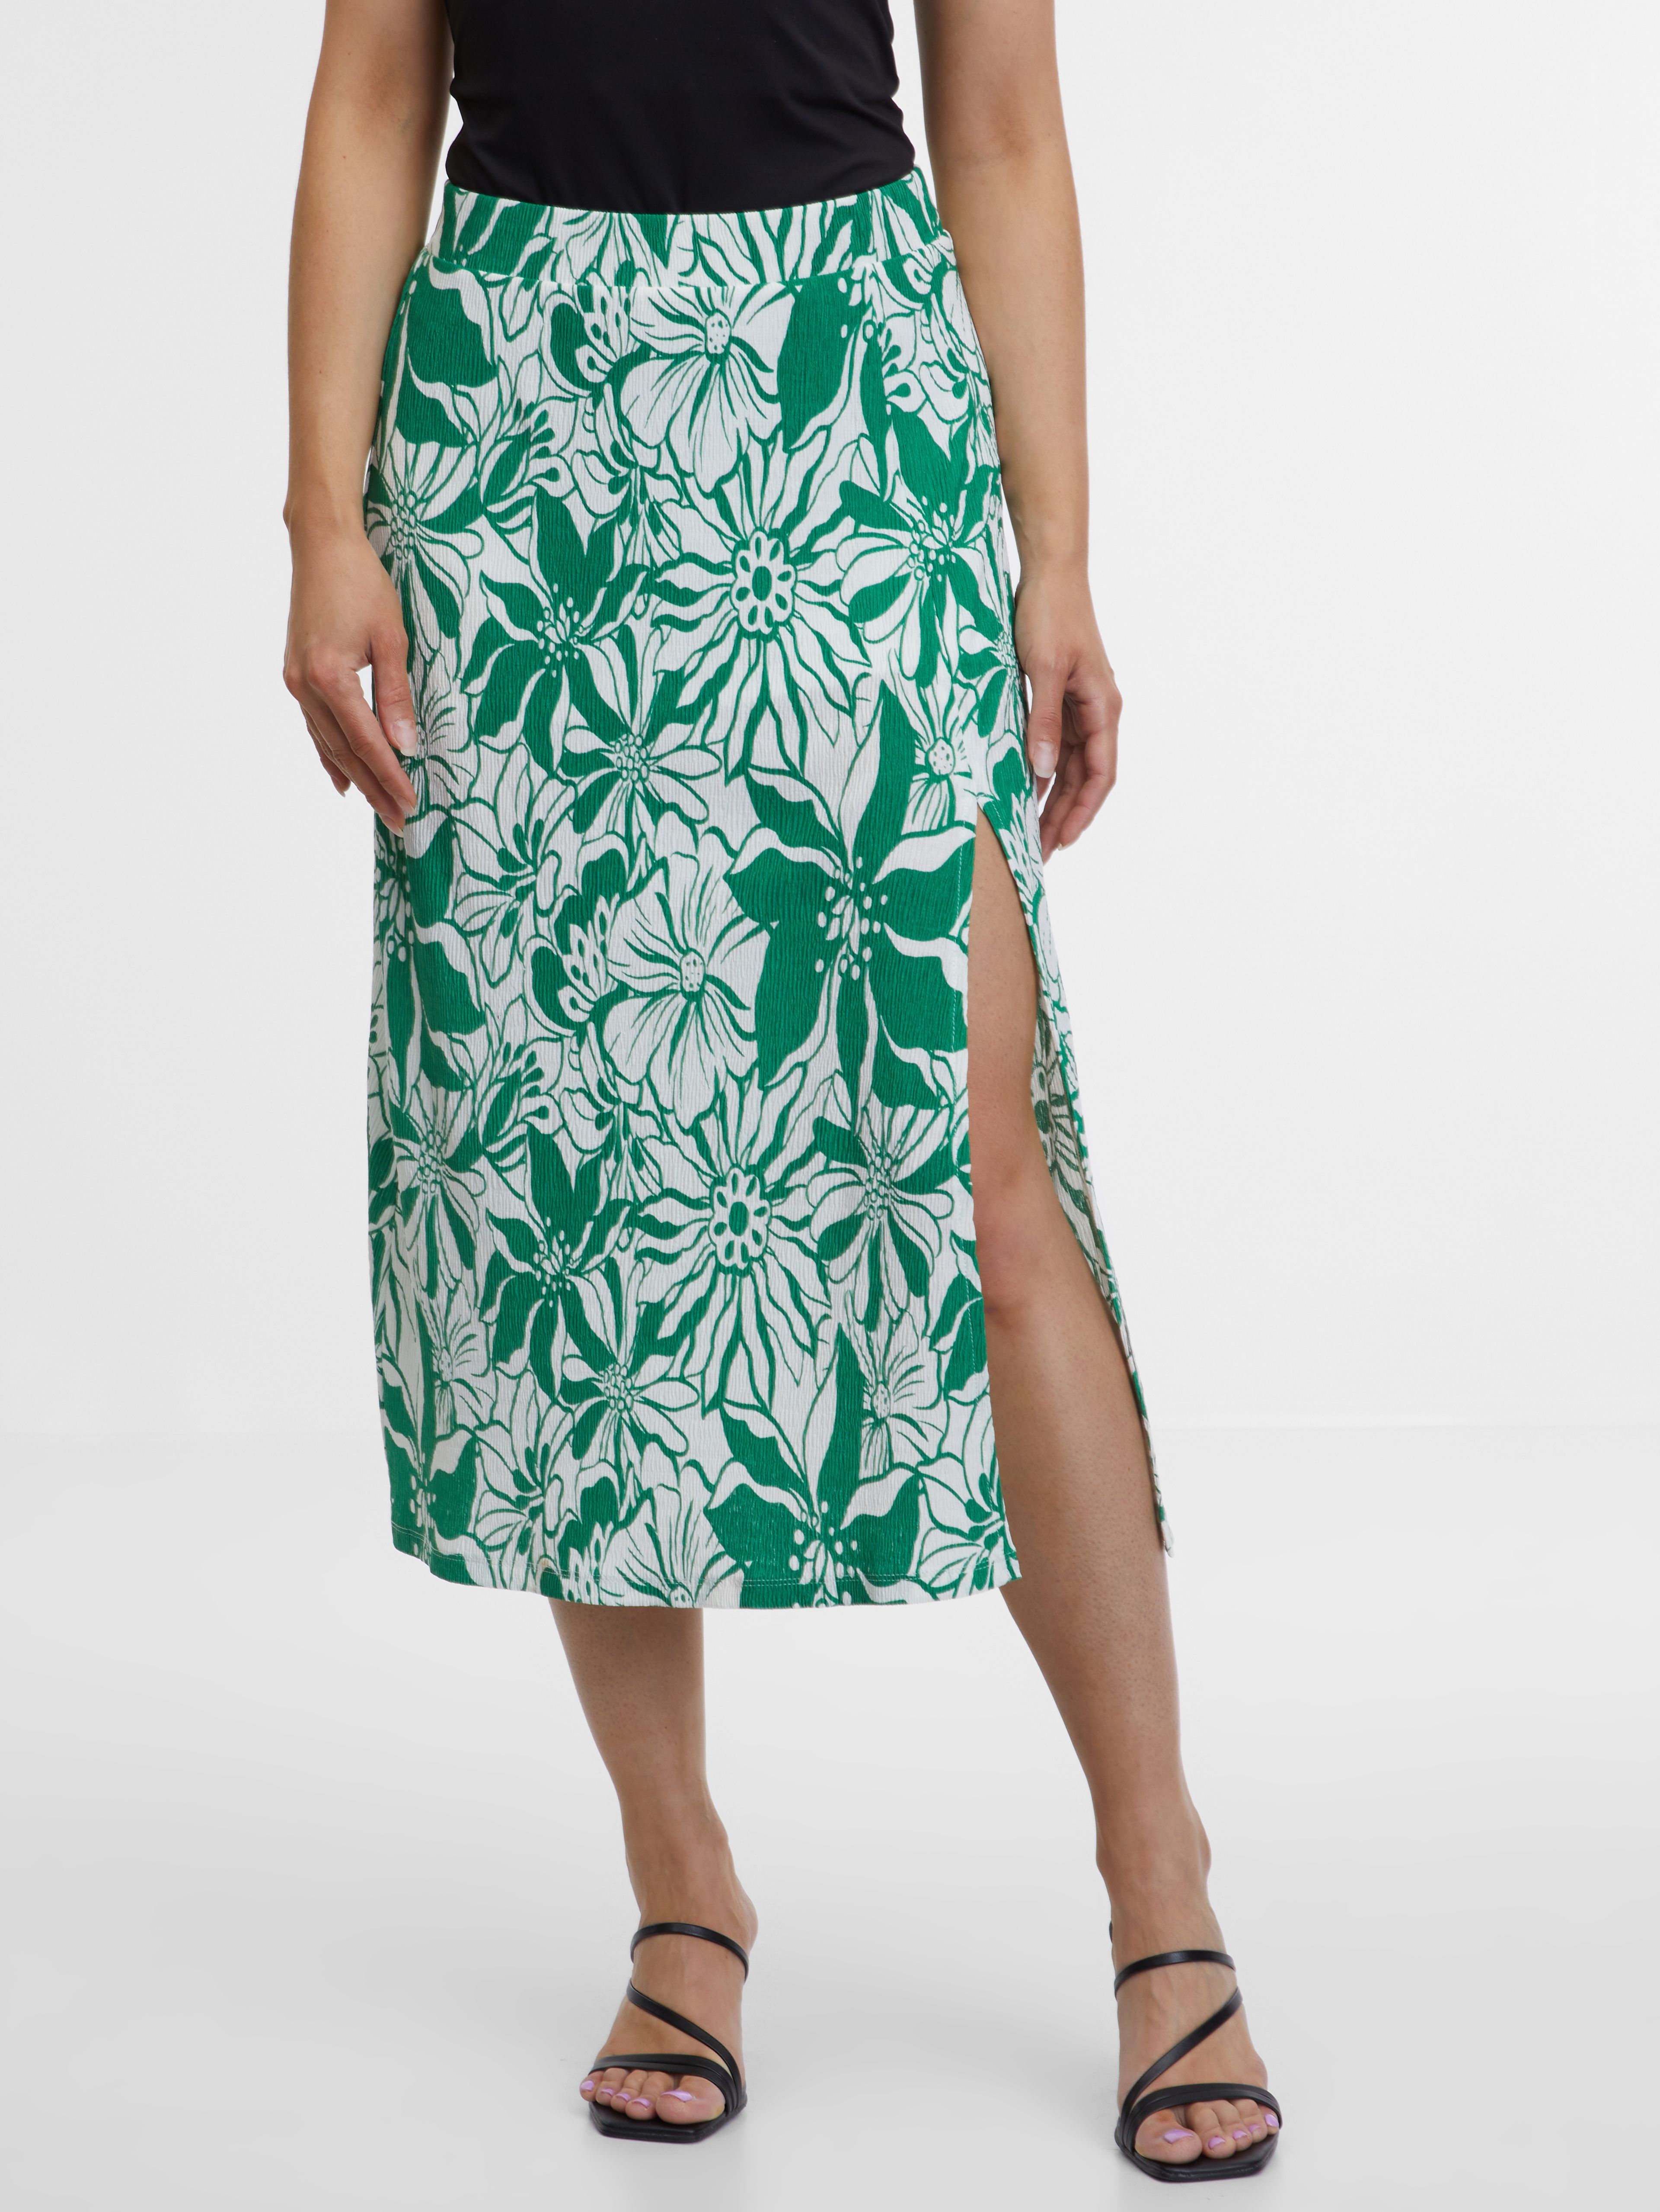 Zelená dámská vzorovaná sukně ORSAY